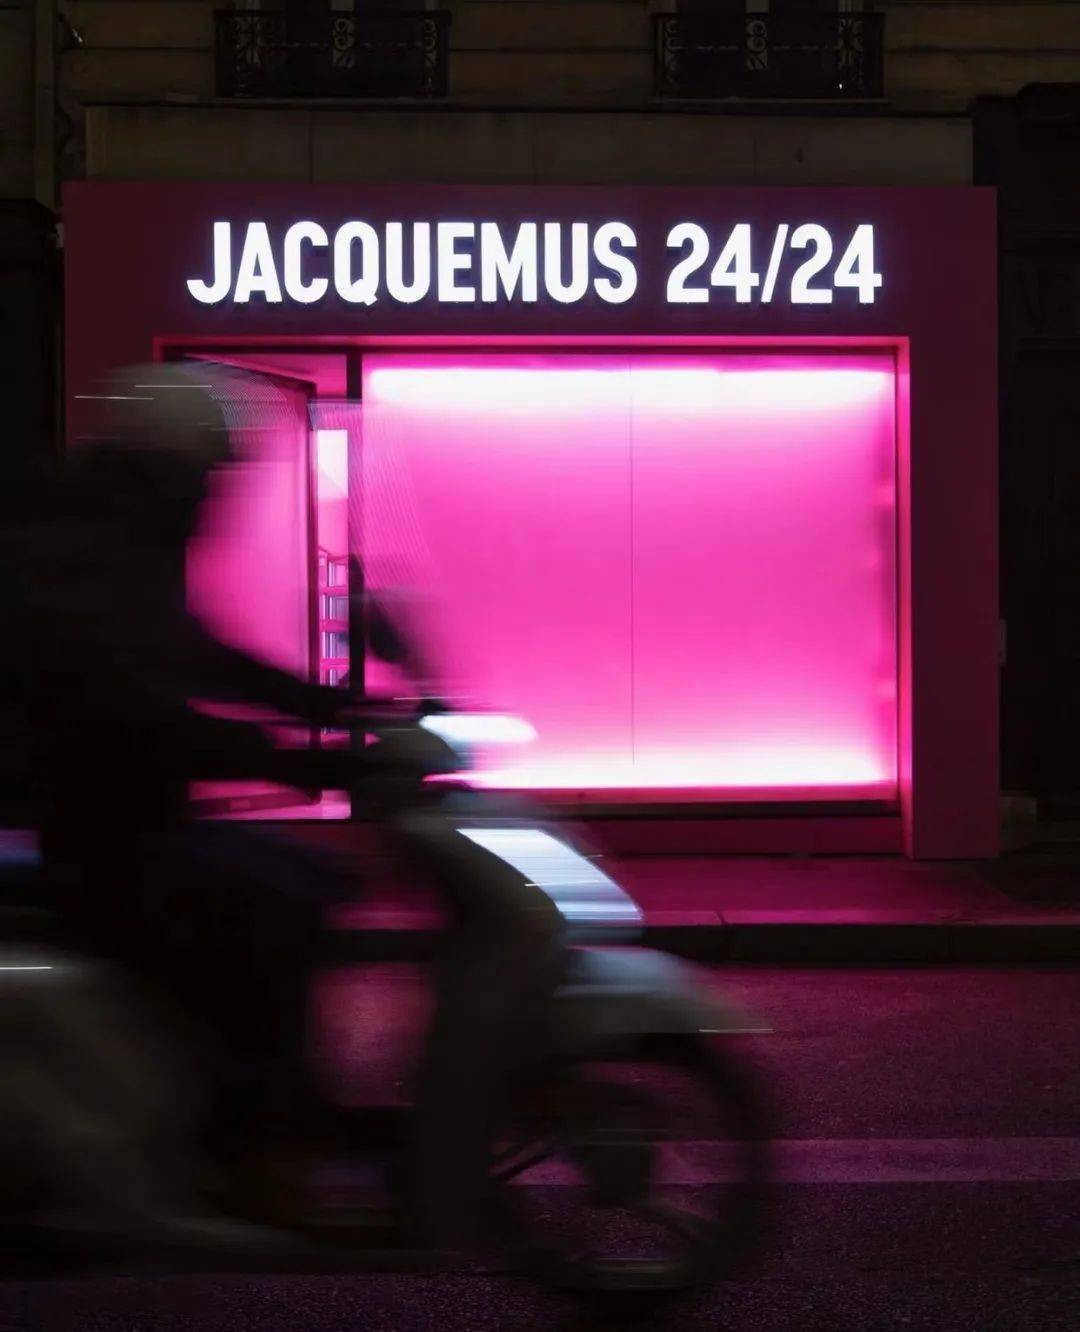 南法热门时尚品牌背后的靓仔创始人 Simon Porte Jacquemus